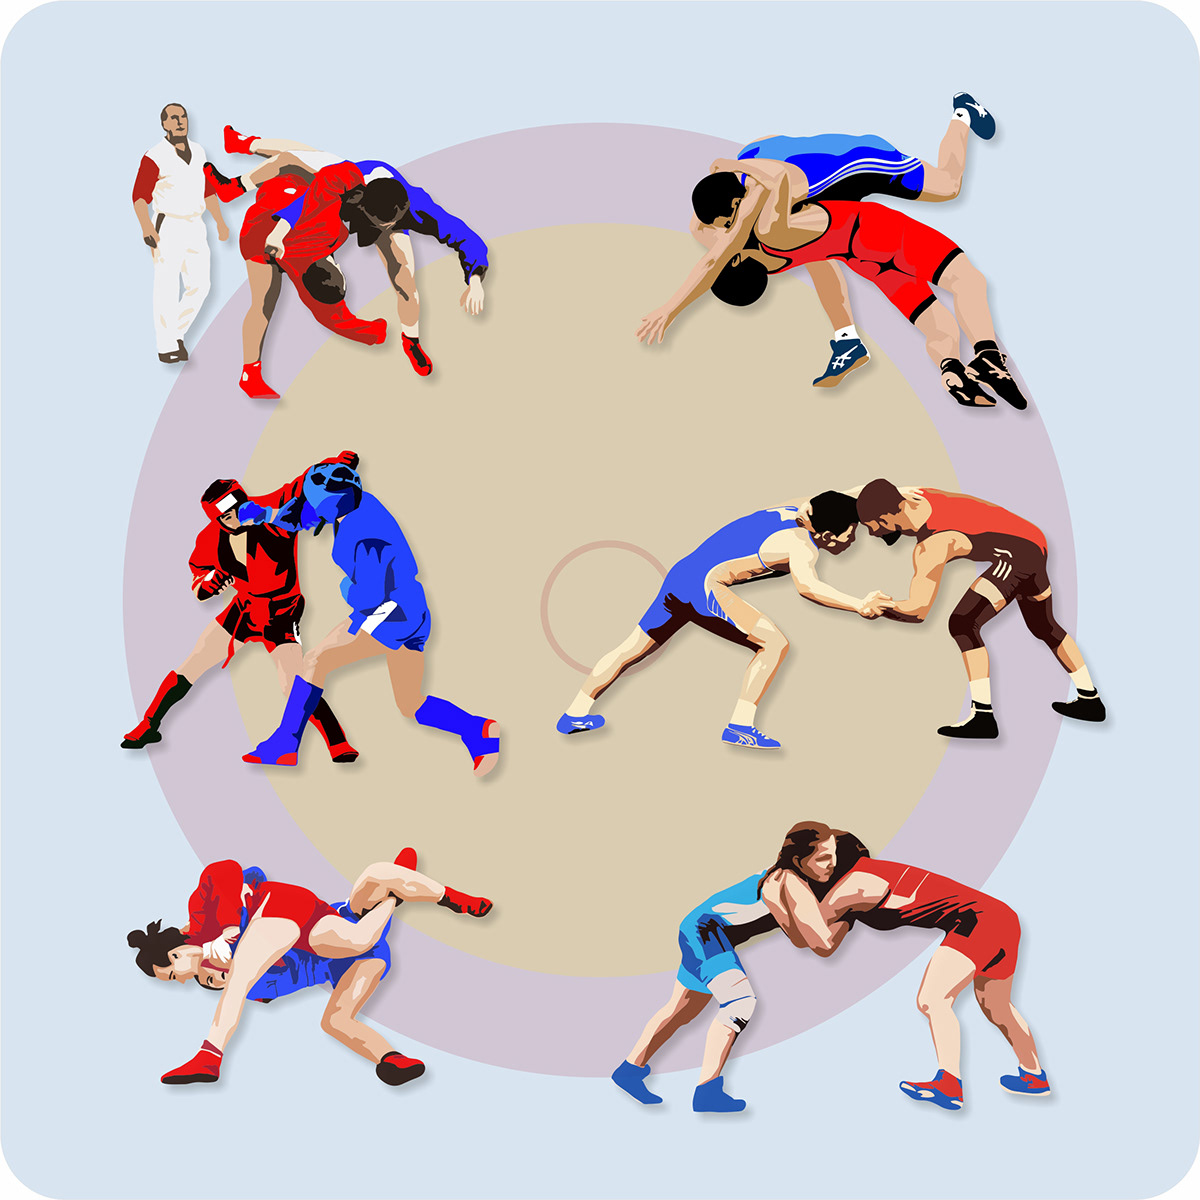 combative sports Greco-Roman wrestling Martial Arts sport